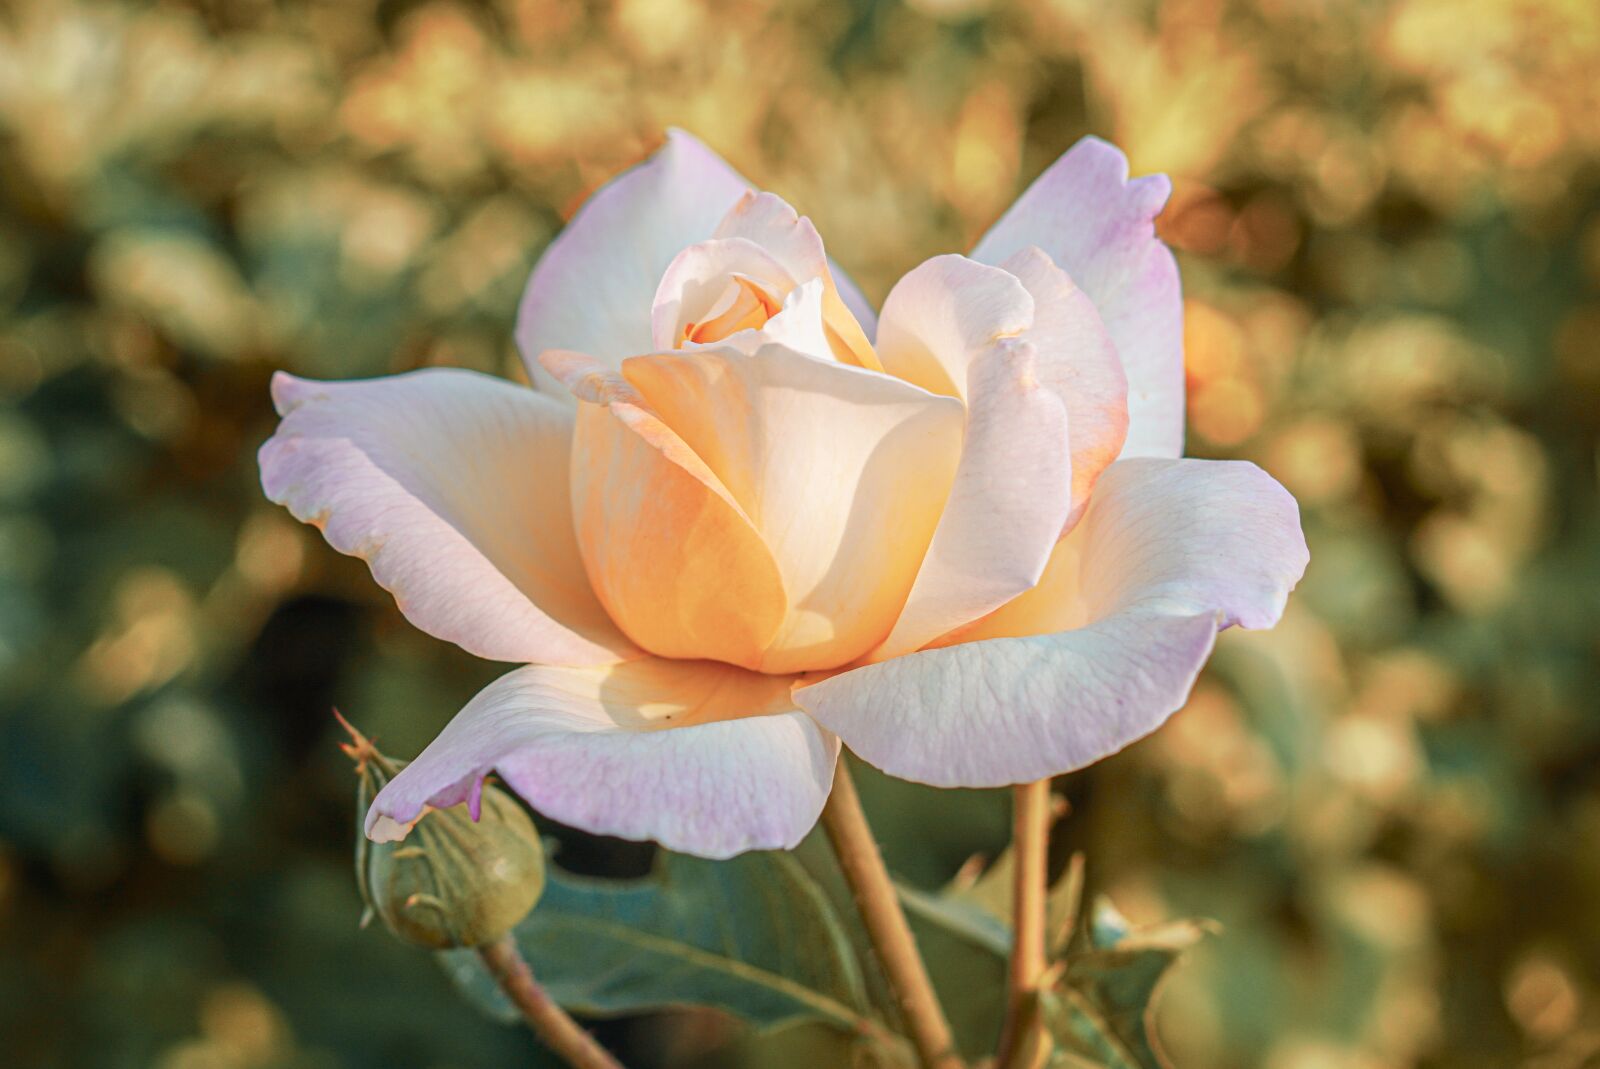 Samyang AF 35mm F1.4 FE sample photo. Rose, flower, romance photography